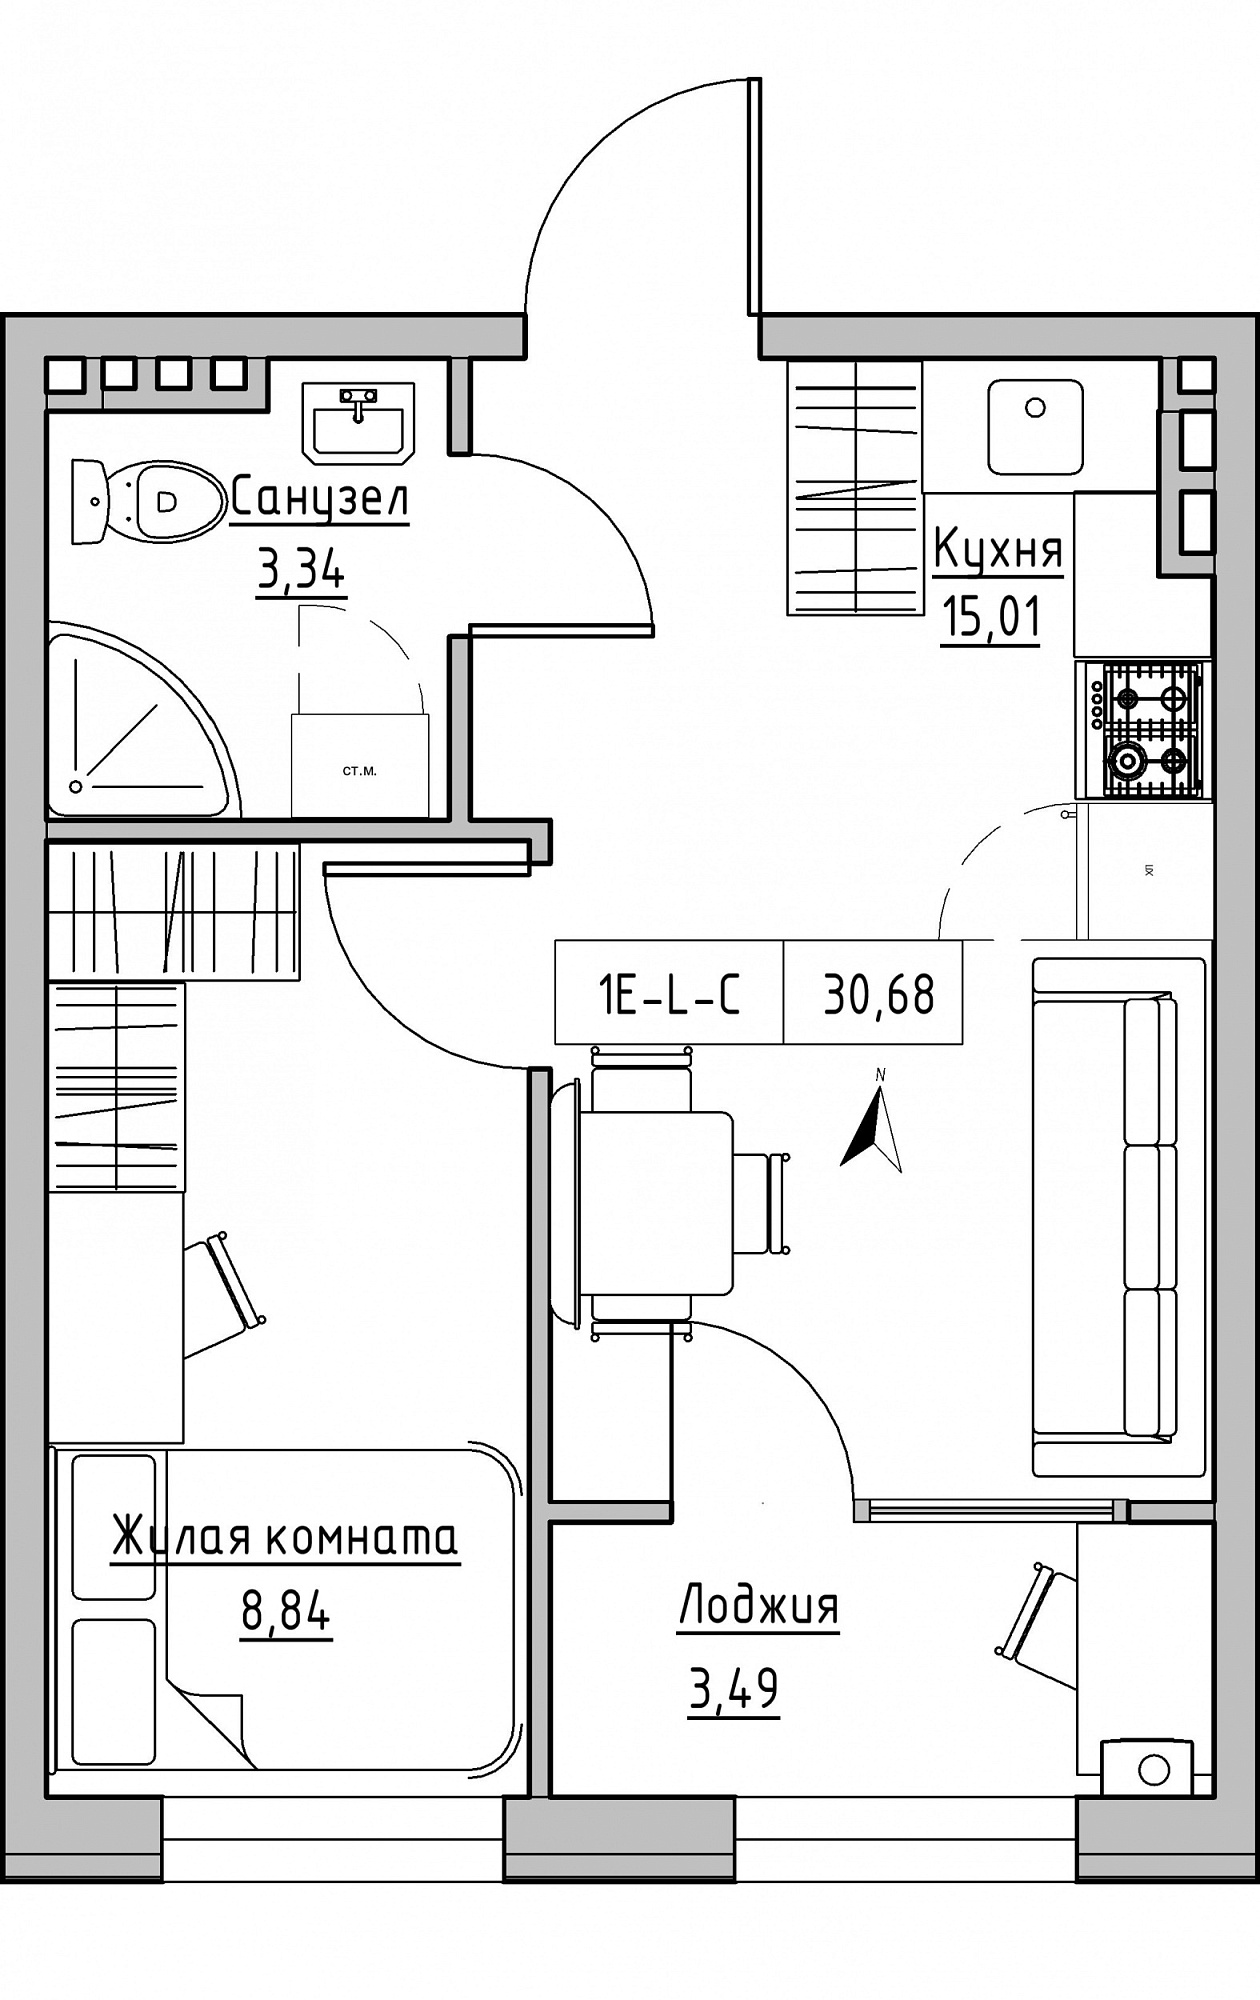 Планування 1-к квартира площею 30.68м2, KS-024-03/0008.